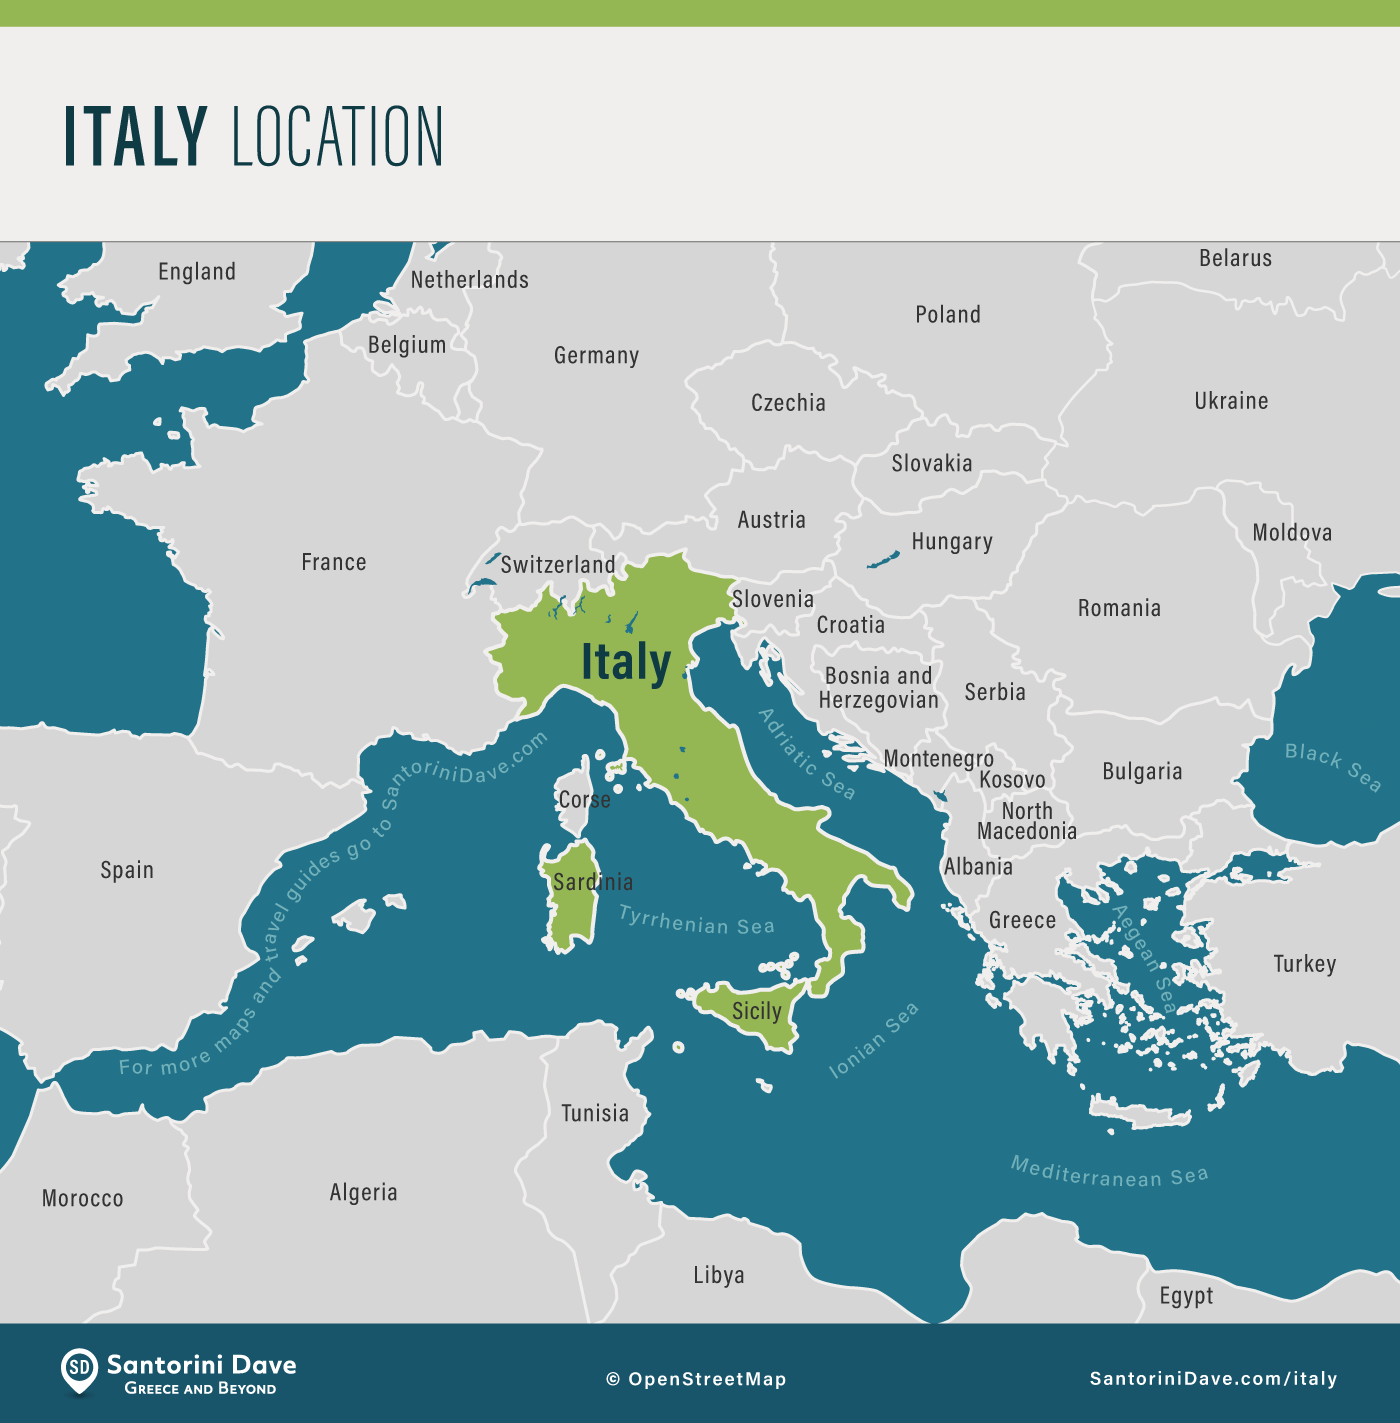 Žemėlapis, rodantis Italijos vietą, palyginti su aplinkinėmis regiono šalimis.